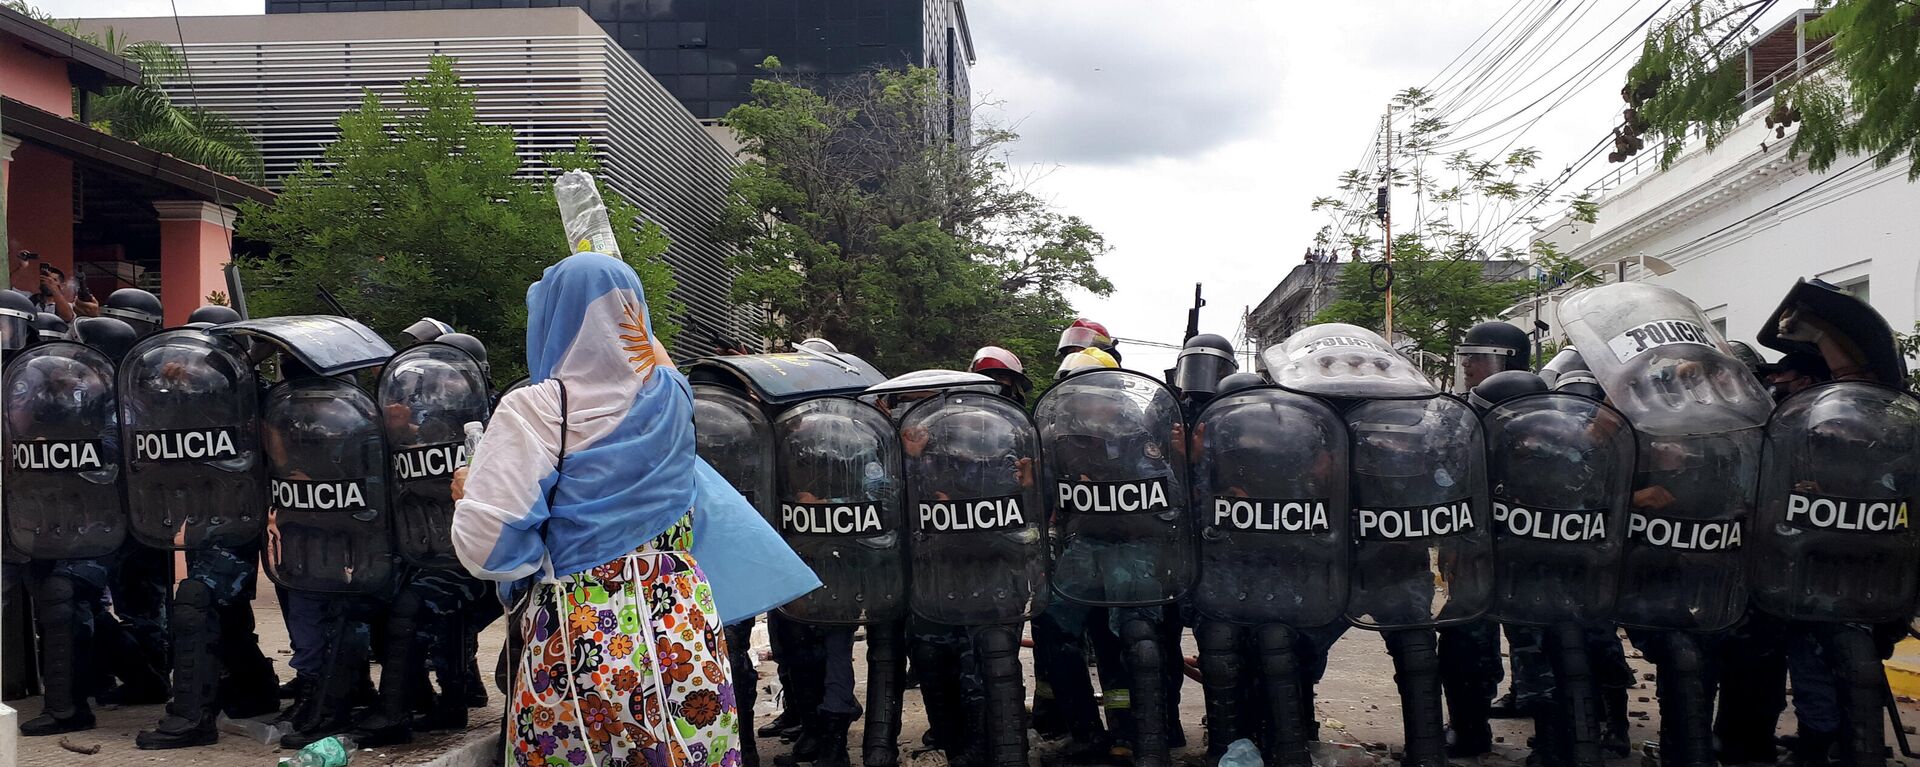 Una mujer se manifiesta frente a la Policía en la provincia argentina de Formosa - Sputnik Mundo, 1920, 31.03.2021